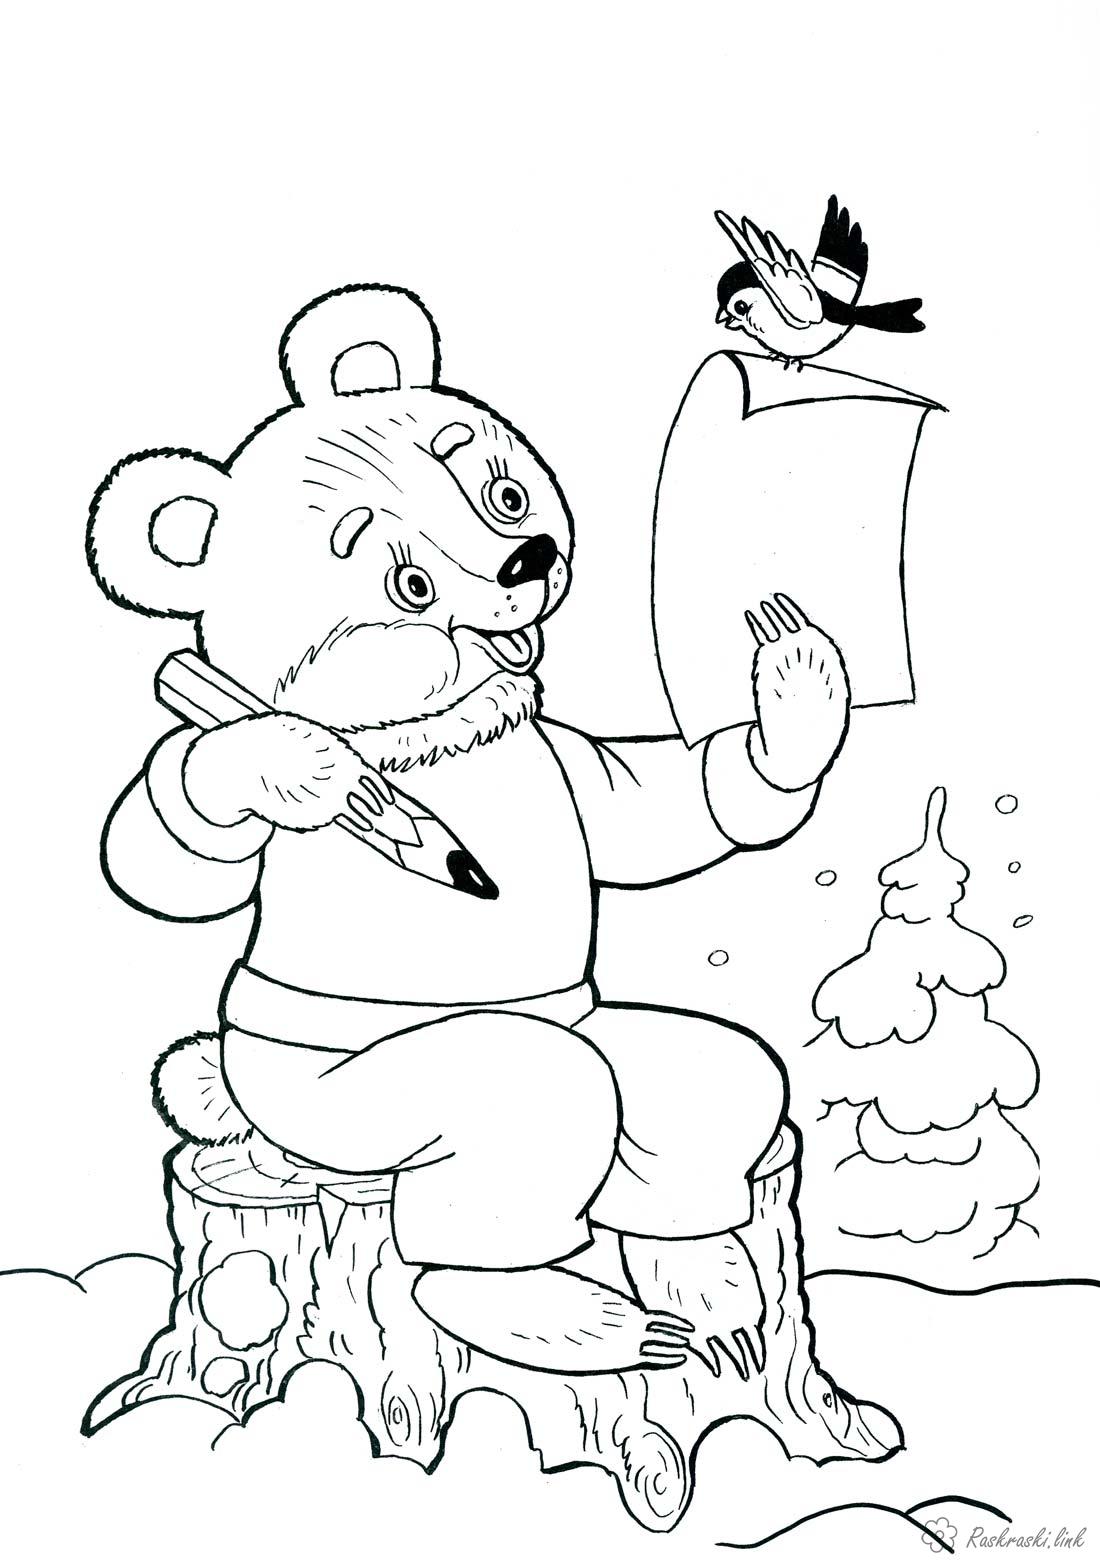 Розмальовки свята дитяча новорічна розфарбування, ведмедик пише лист Діду Морозу